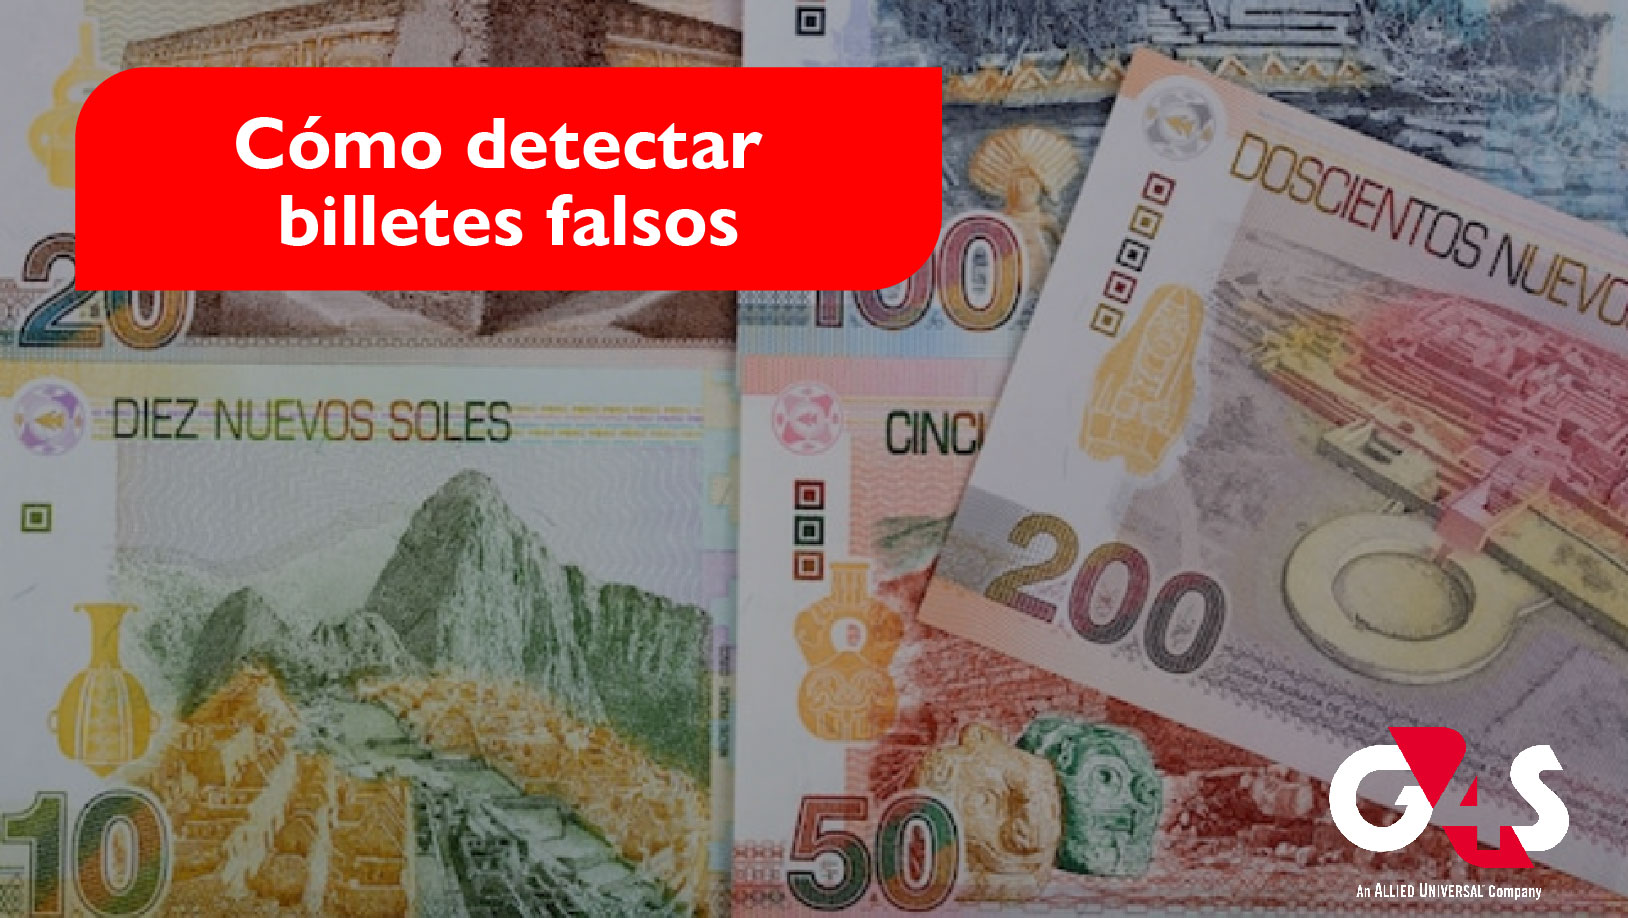 Billetes falsos  Trucos para detectar un billete falso paso a